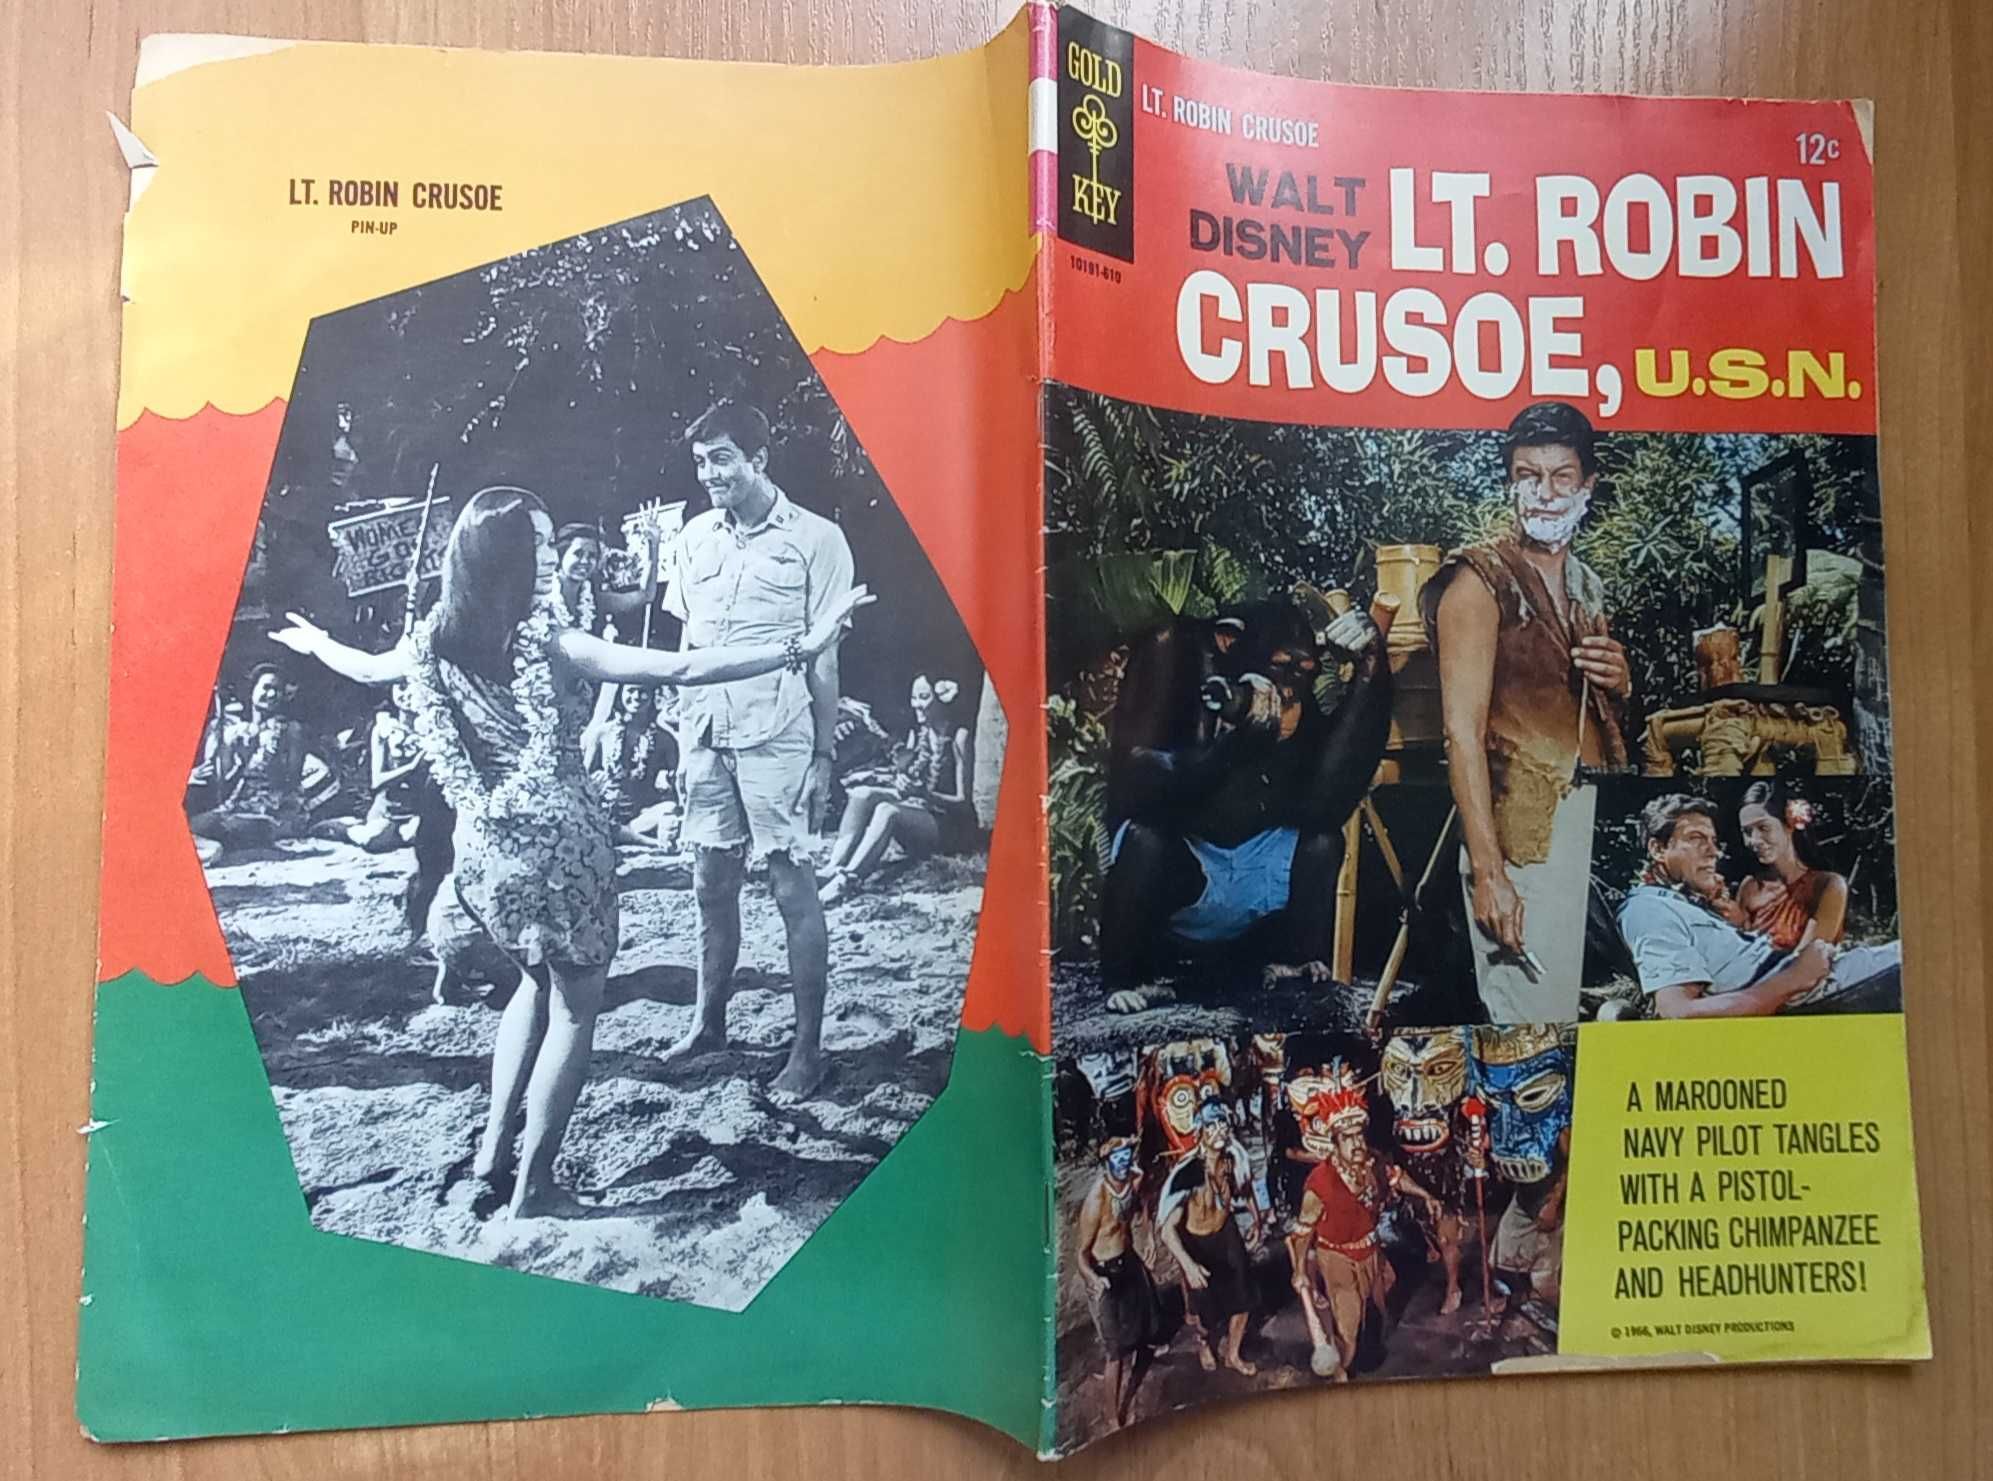 Walt Disney: Lt. Robin Crusoe, U.S.N. - komiks z 1966